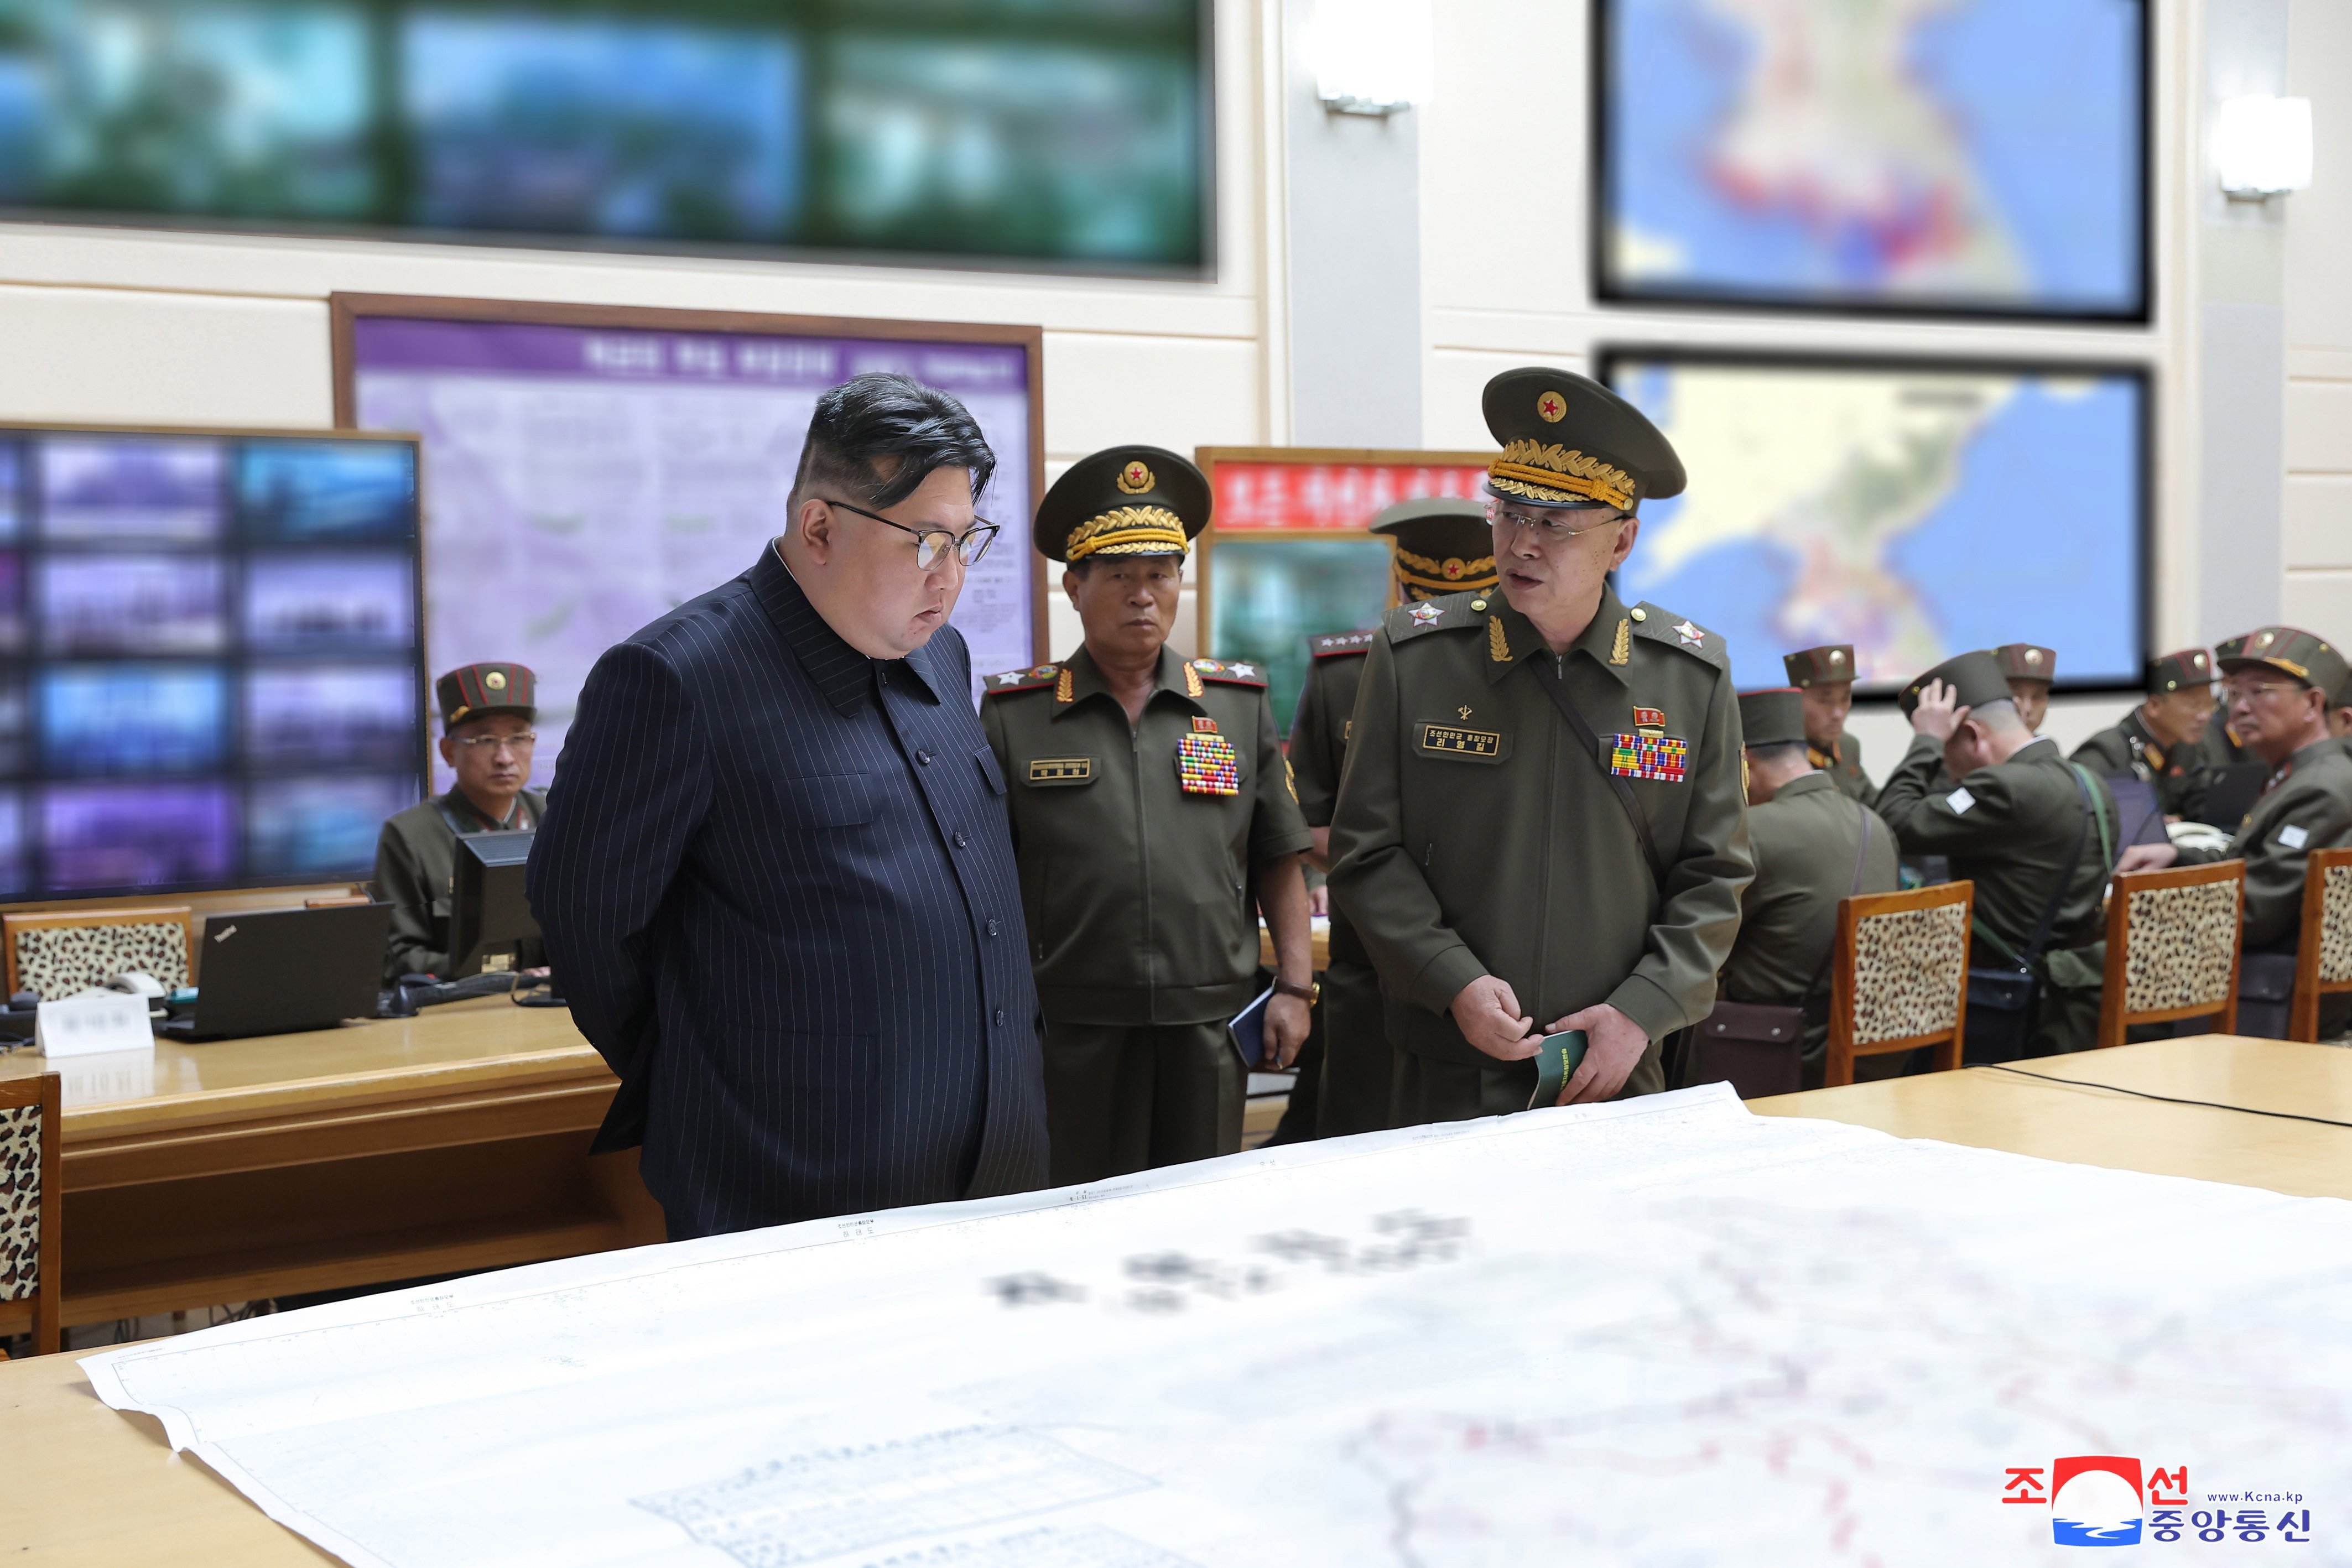 Els EUA amenacen Corea del Nord si ajuda Rússia: "Ho pagaran"